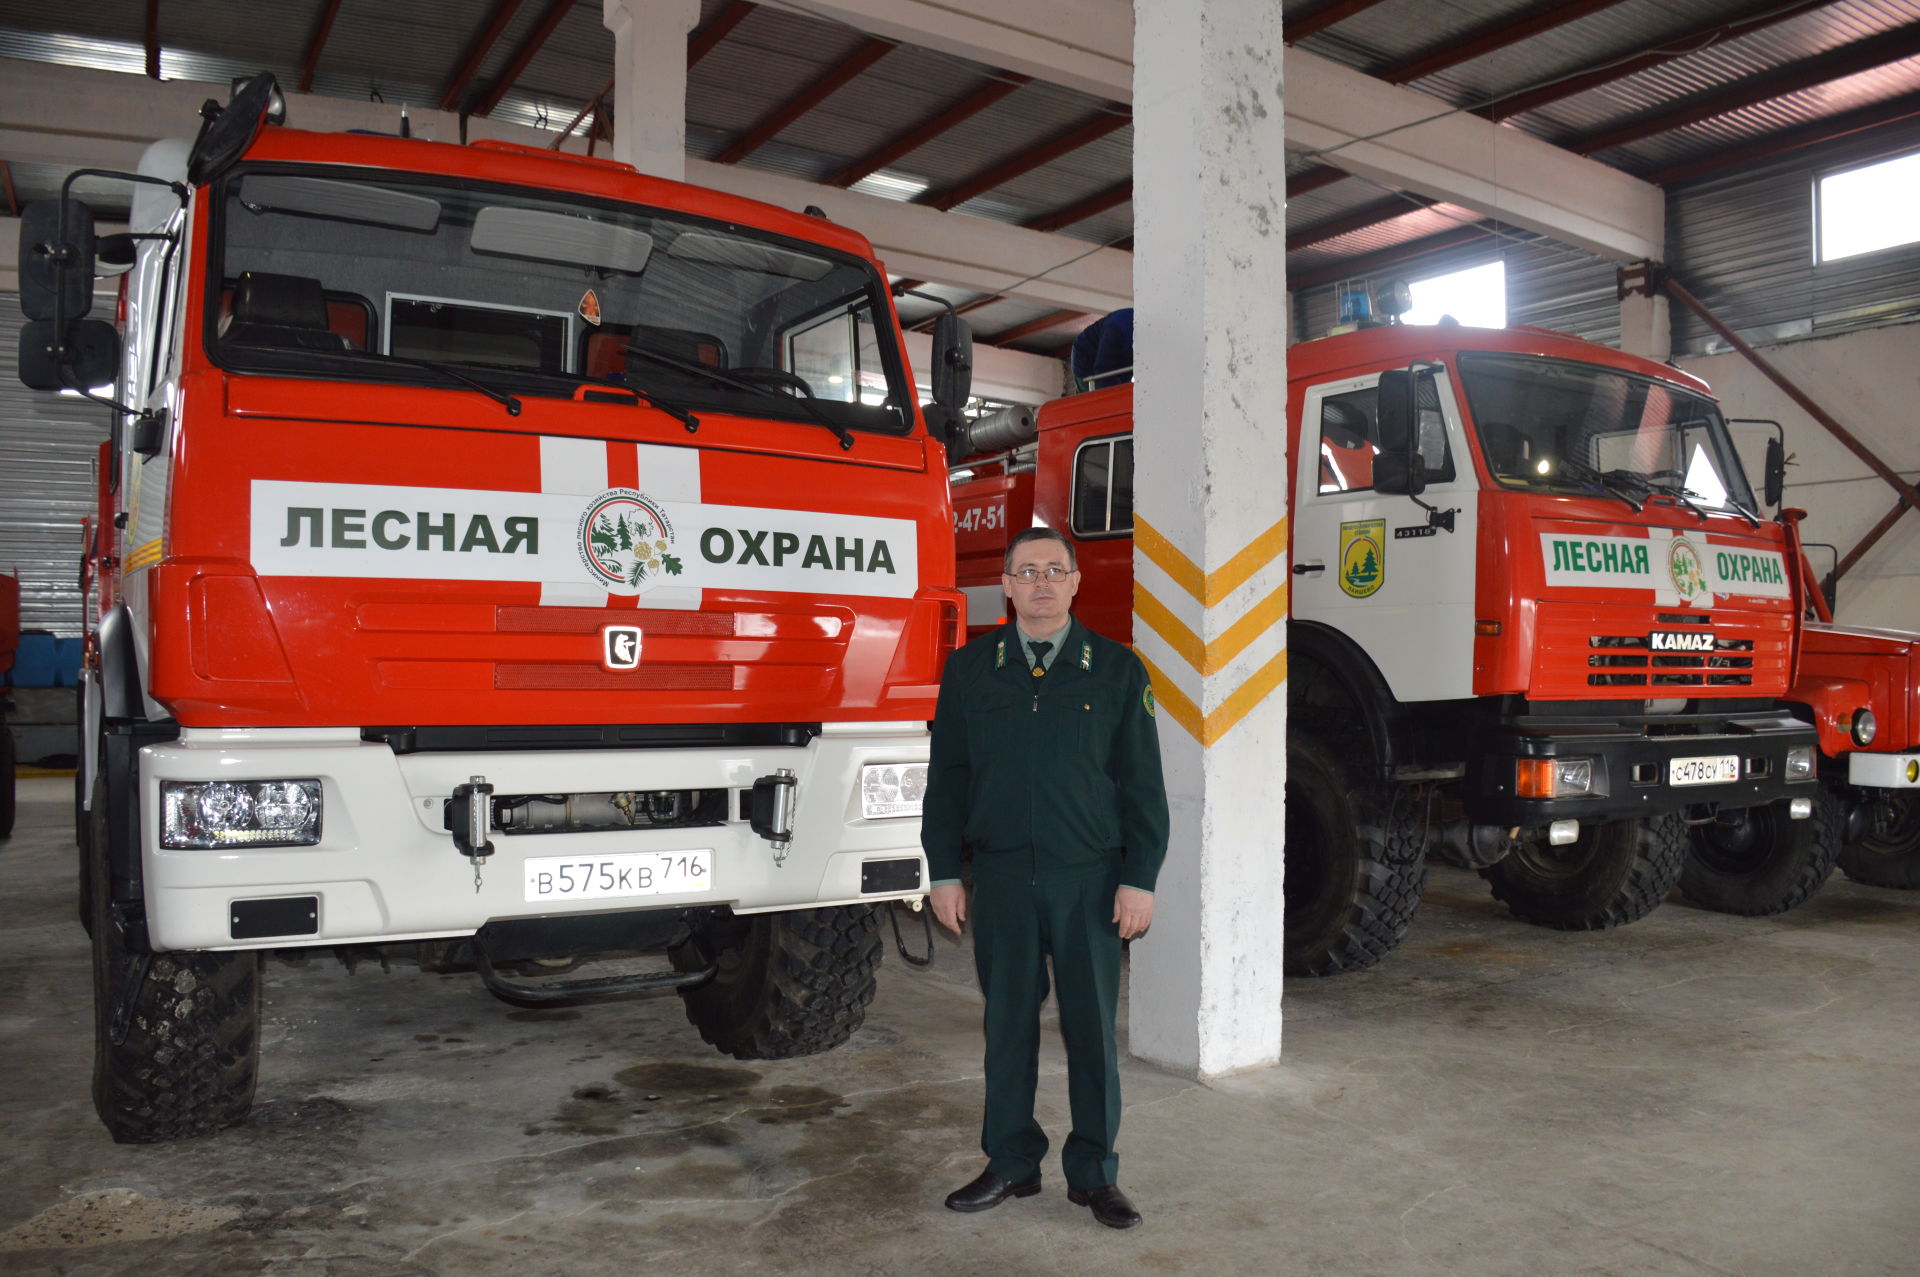 Лесопожарная станция, расположенная в Лаишево, готова к сезону